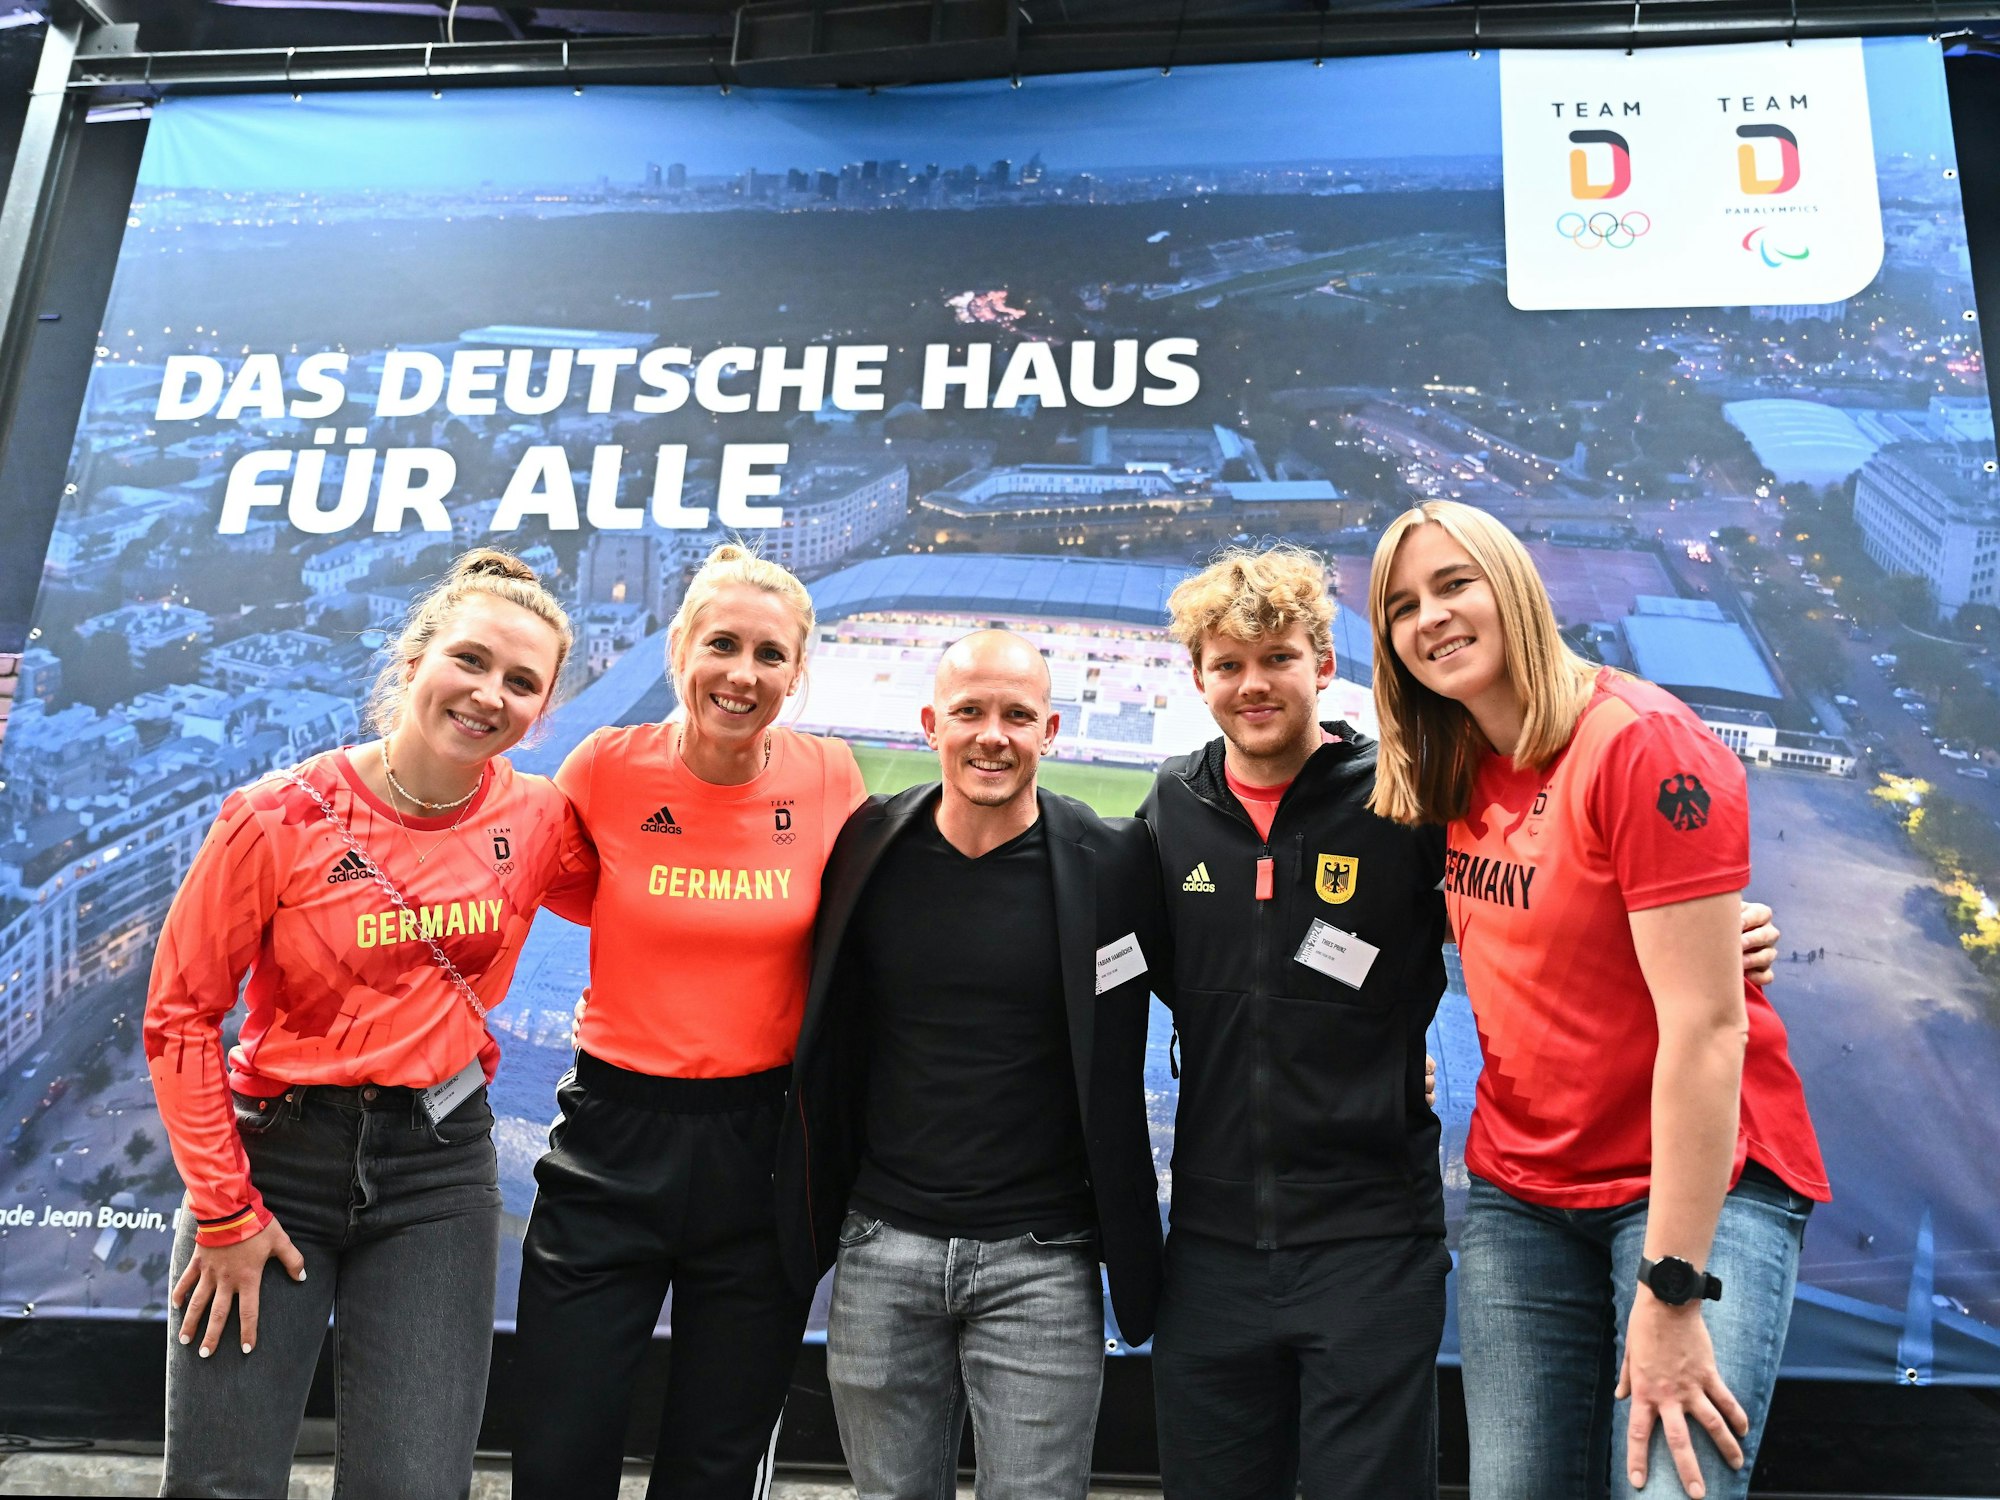 Nike Lorenz, Karla Borger, Fabian Hambüchen, Thies Prinz und Mareike Miller posieren gemeinsam.